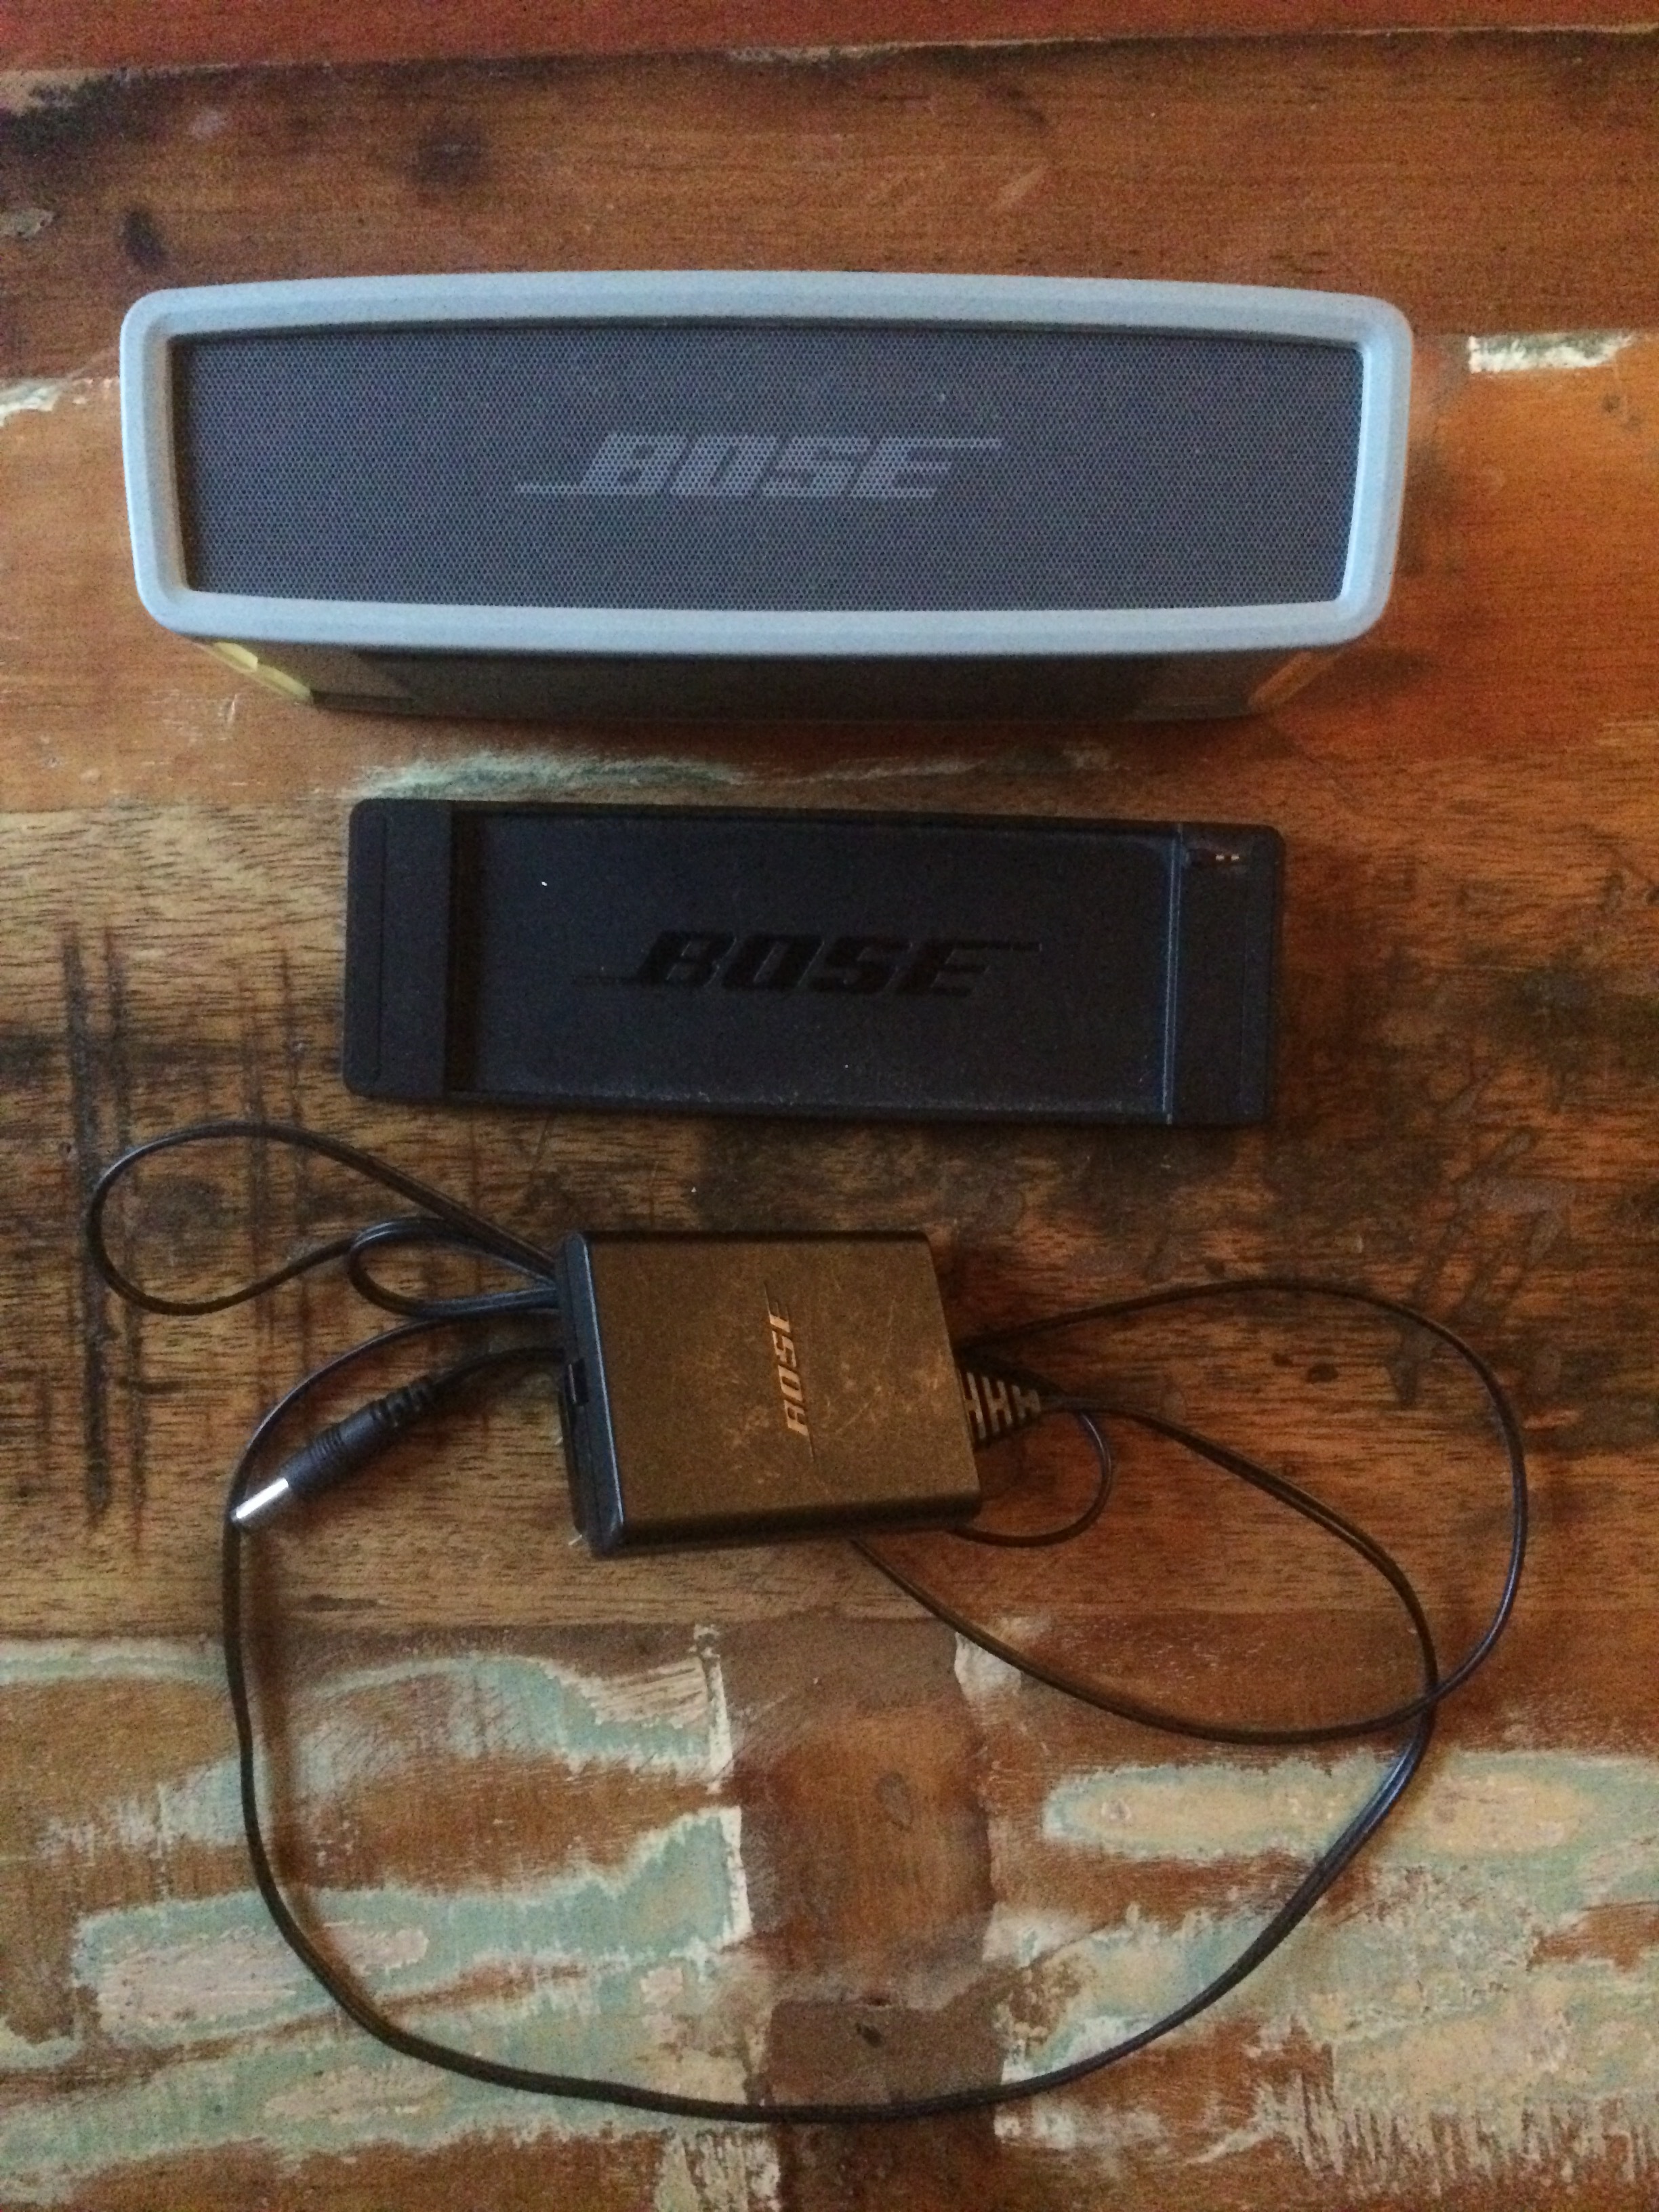 SoundLink Mini II - Bose SoundLink Mini II - Audiofanzine